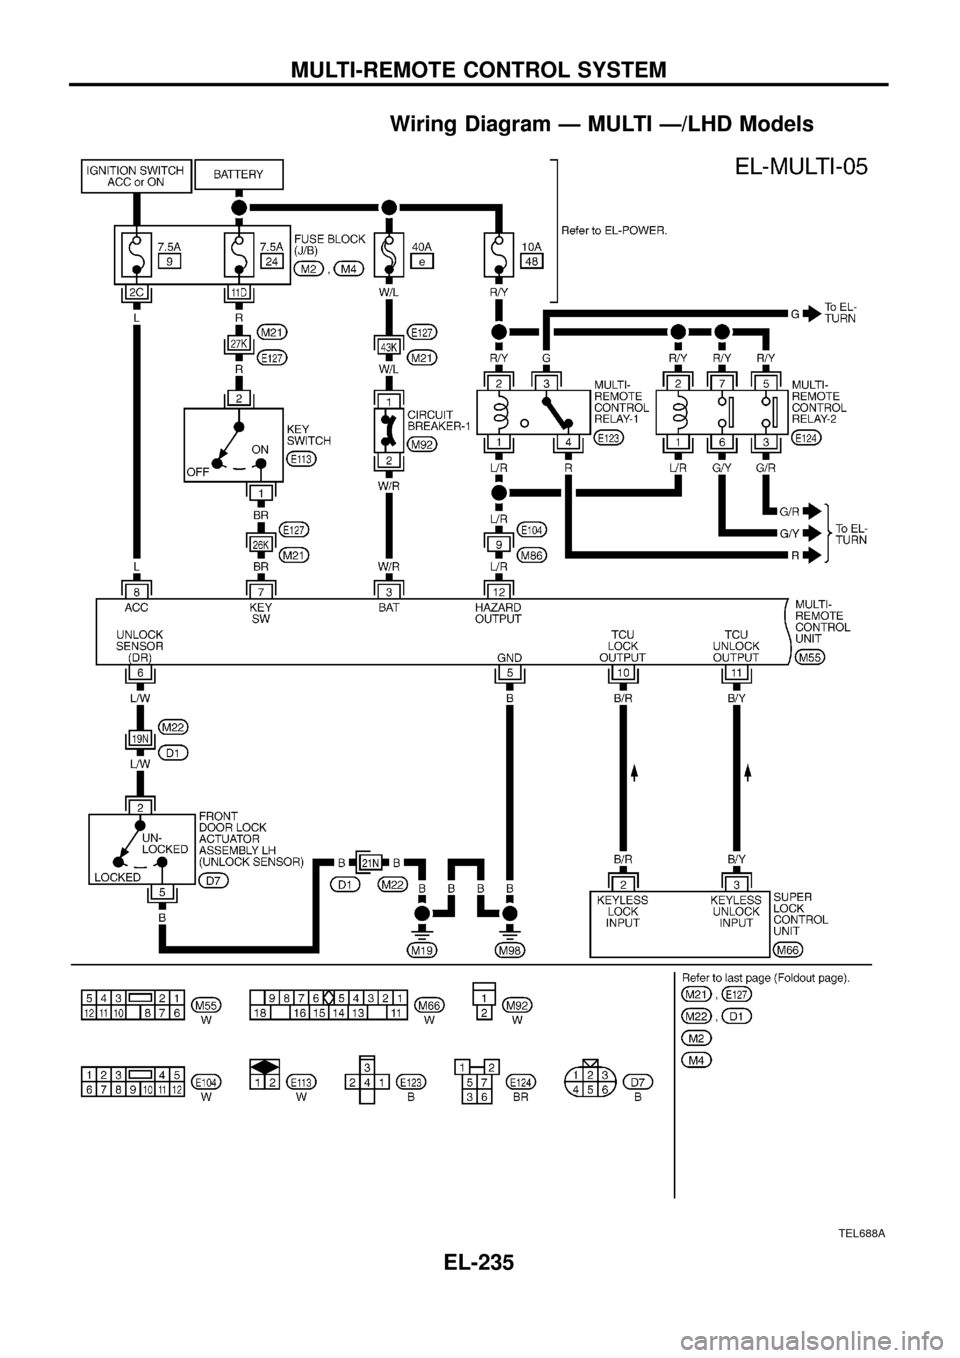 NISSAN PATROL 1998 Y61 / 5.G Electrical System Workshop Manual Wiring Diagram Ð MULTI Ð/LHD Models
TEL688A
MULTI-REMOTE CONTROL SYSTEM
EL-235 